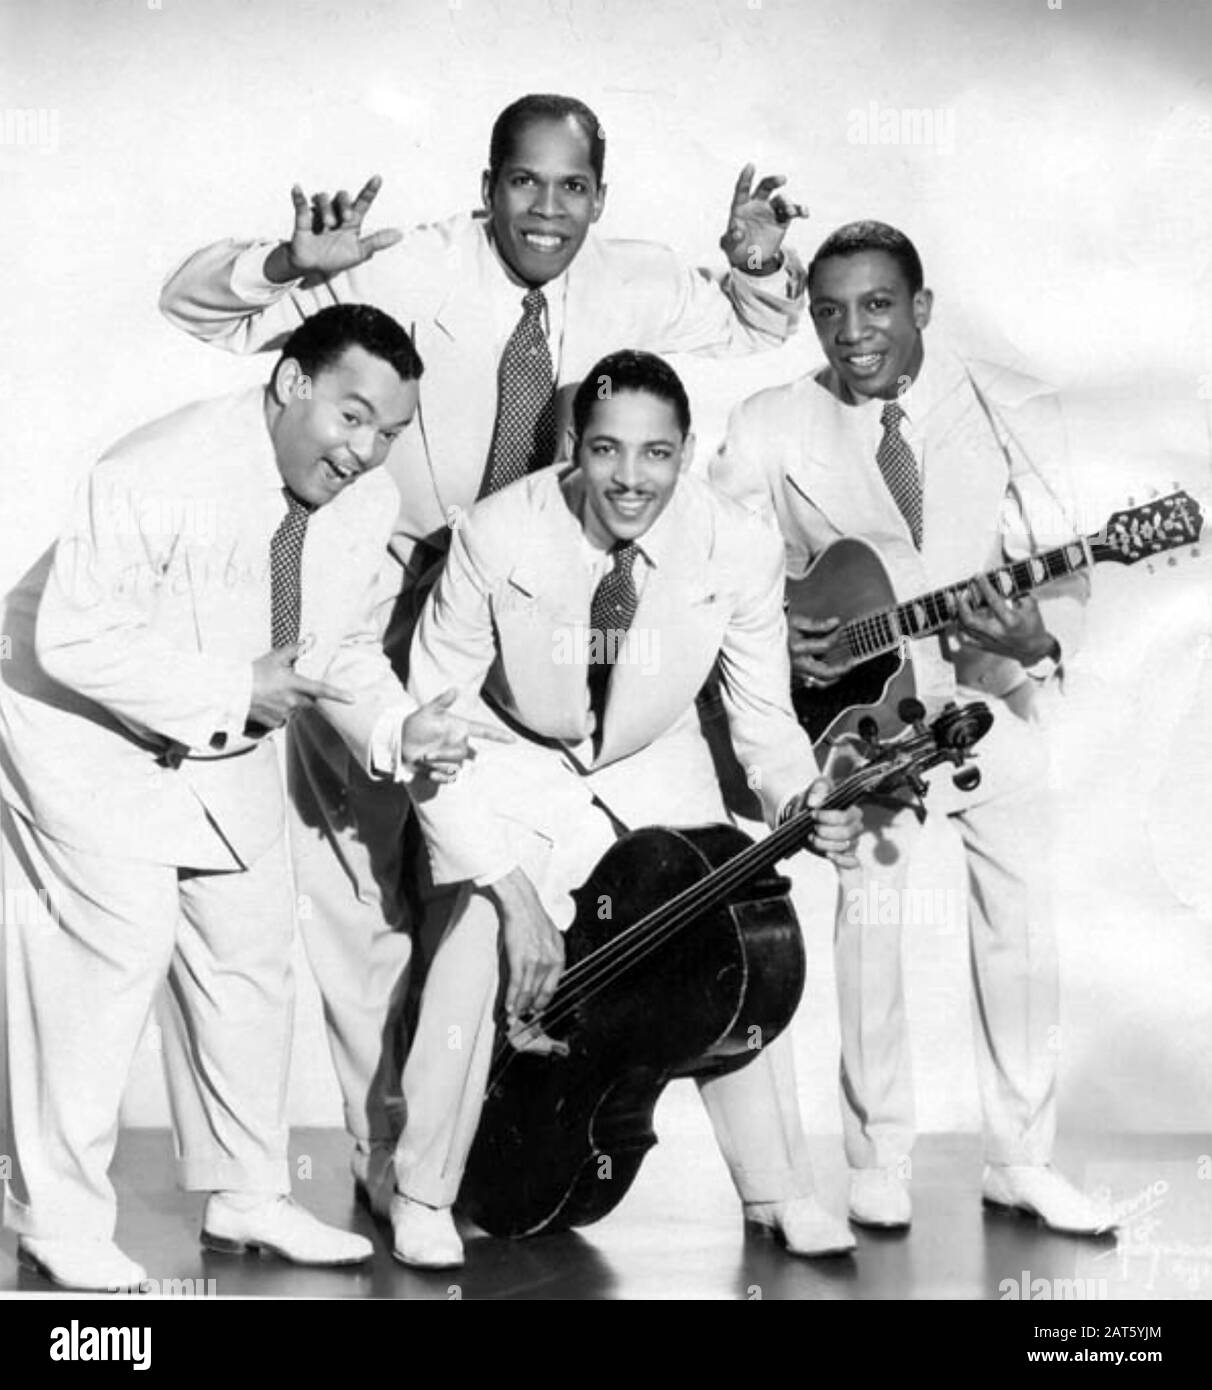 GLI SPOT D'INCHIOSTRO Foto promozionale del gruppo jazz vocale americano circa 1950 con Bill Kenny secondo da sinistra Foto Stock